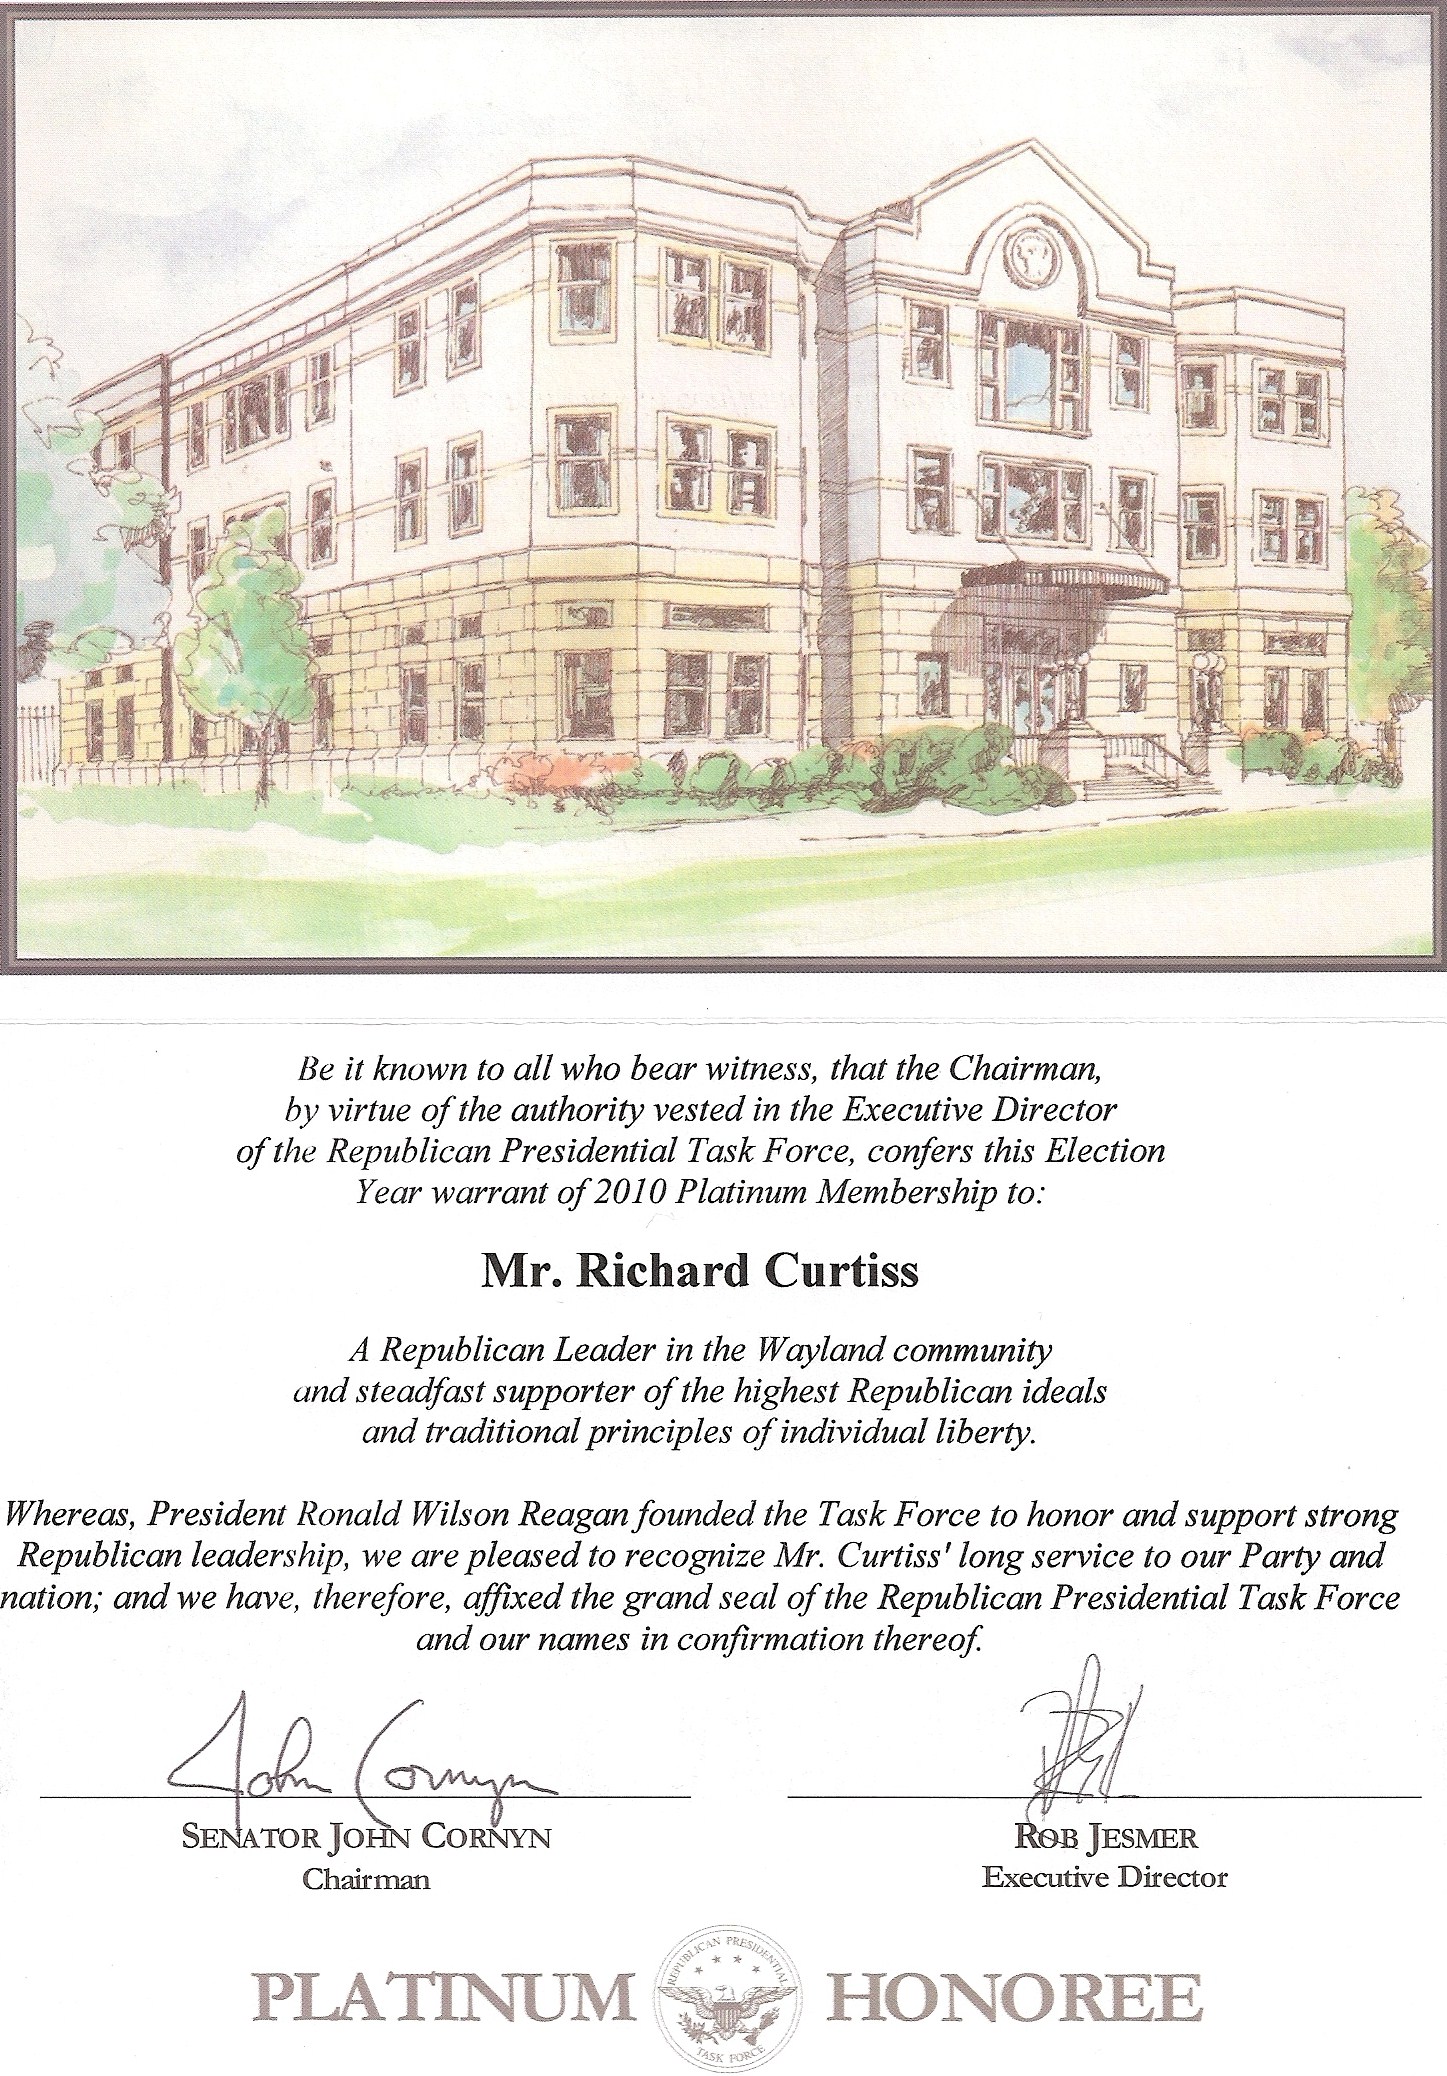 Platinum Honoree Certificate